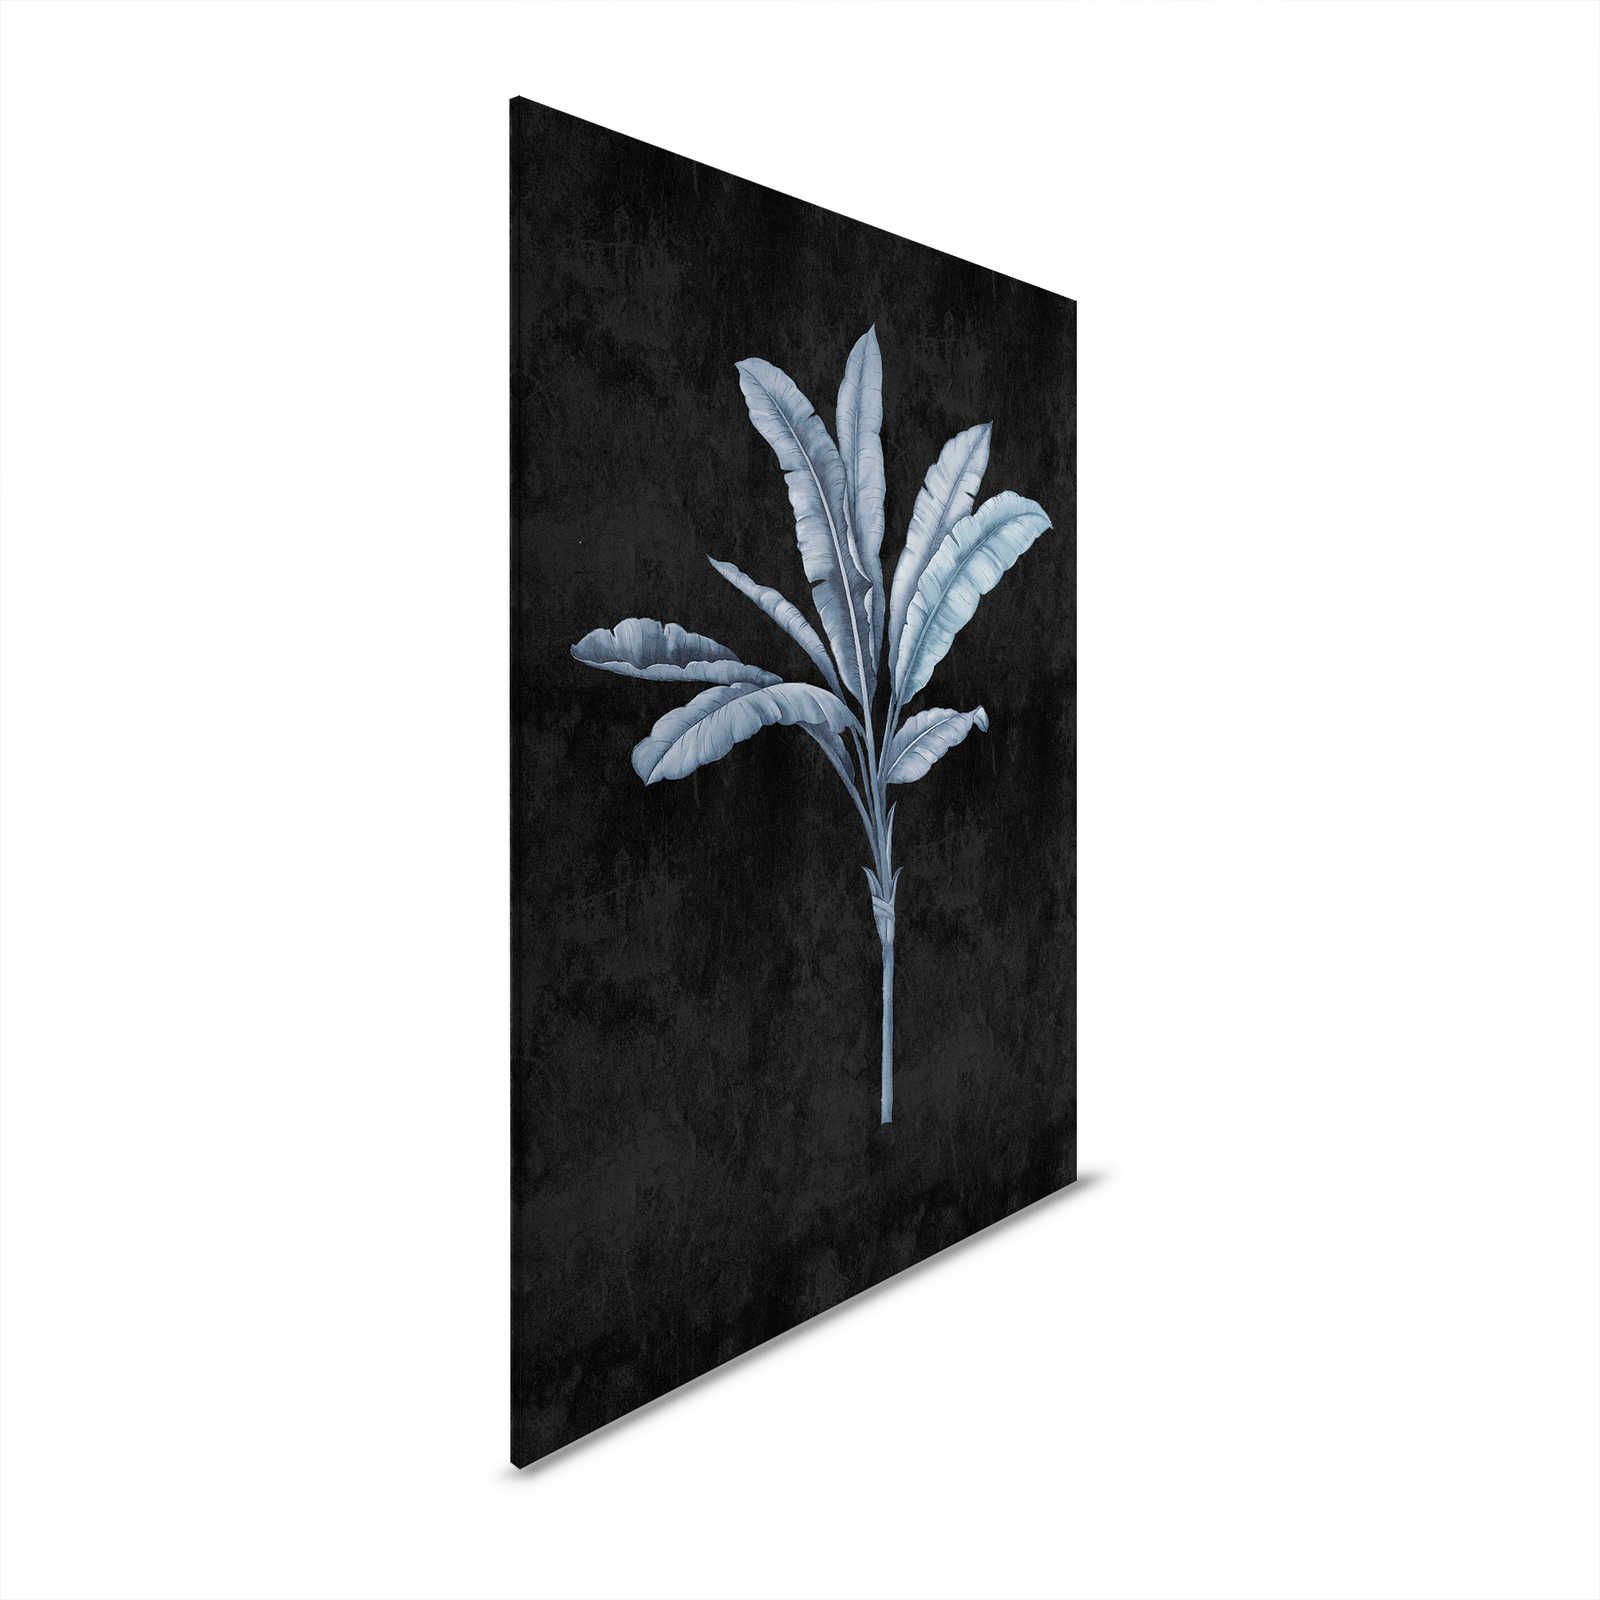 Fiji 2 - Canvas schilderij Zwart met Blauwgrijs Palmmotief - 0.60 m x 0.90 m
